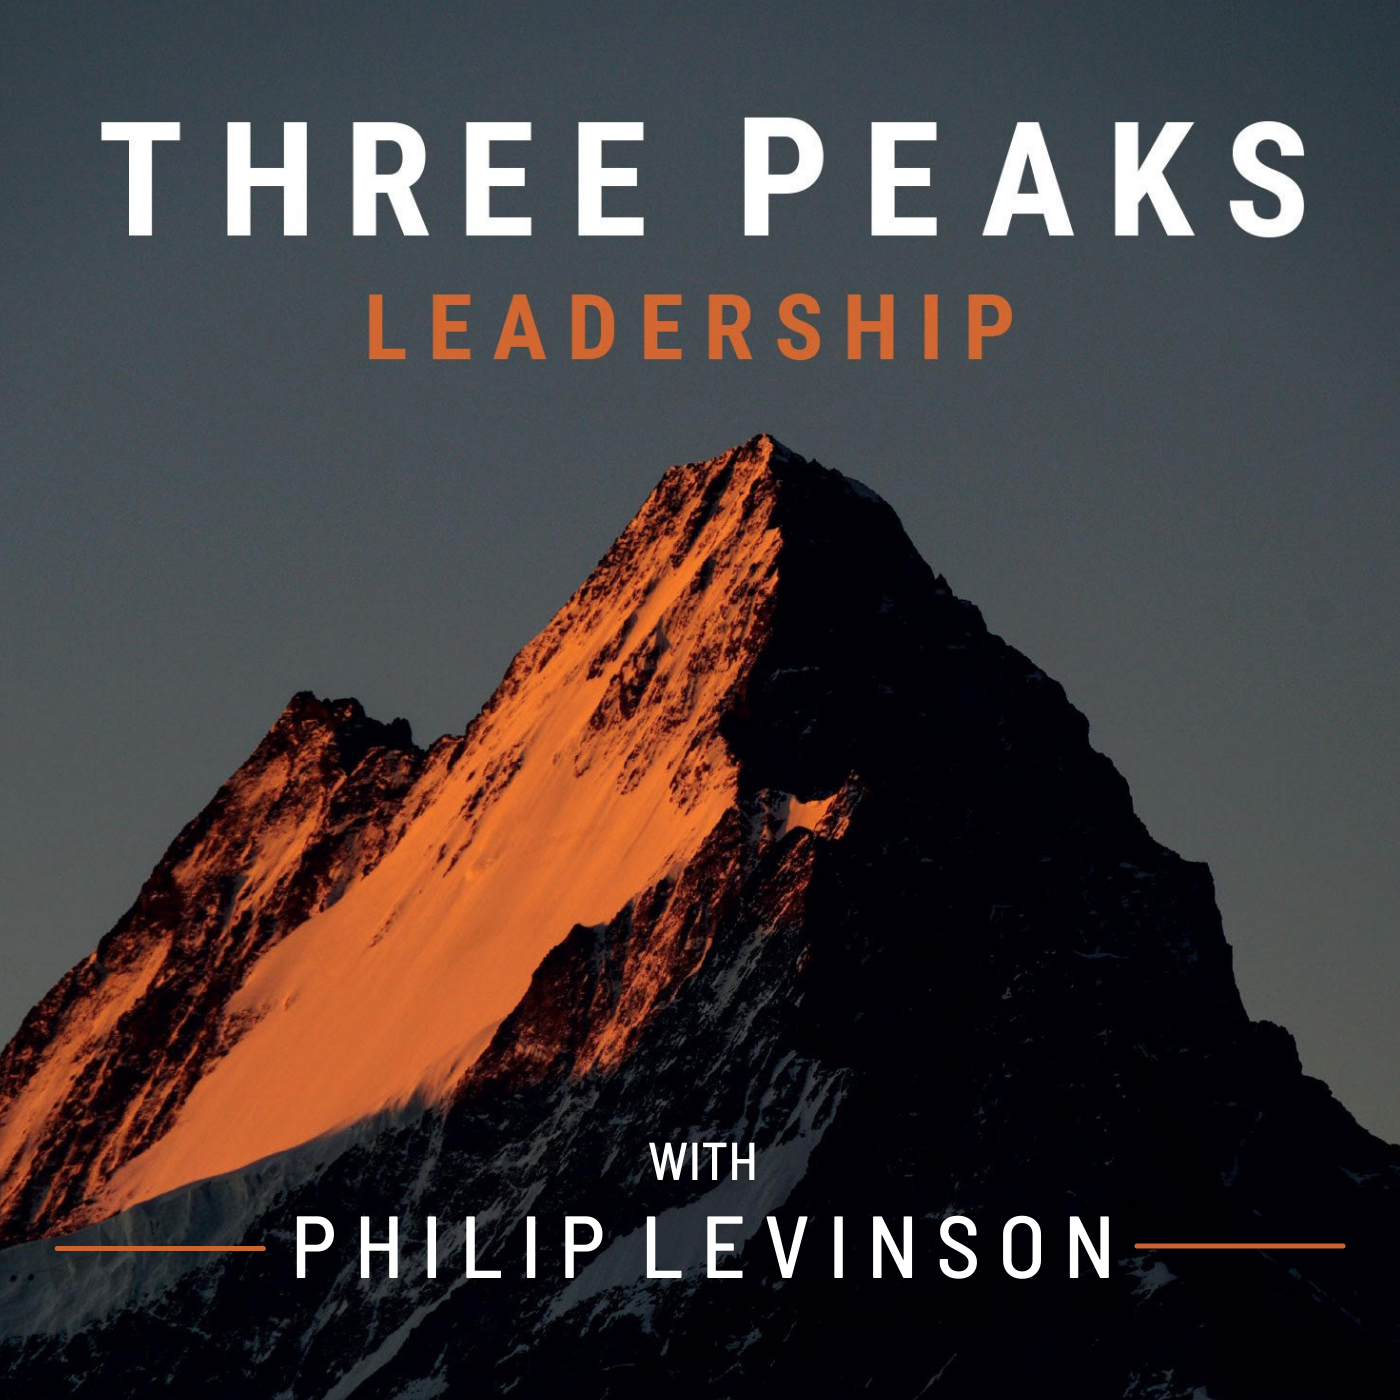 Three Peaks Leadership with Philip Levinson